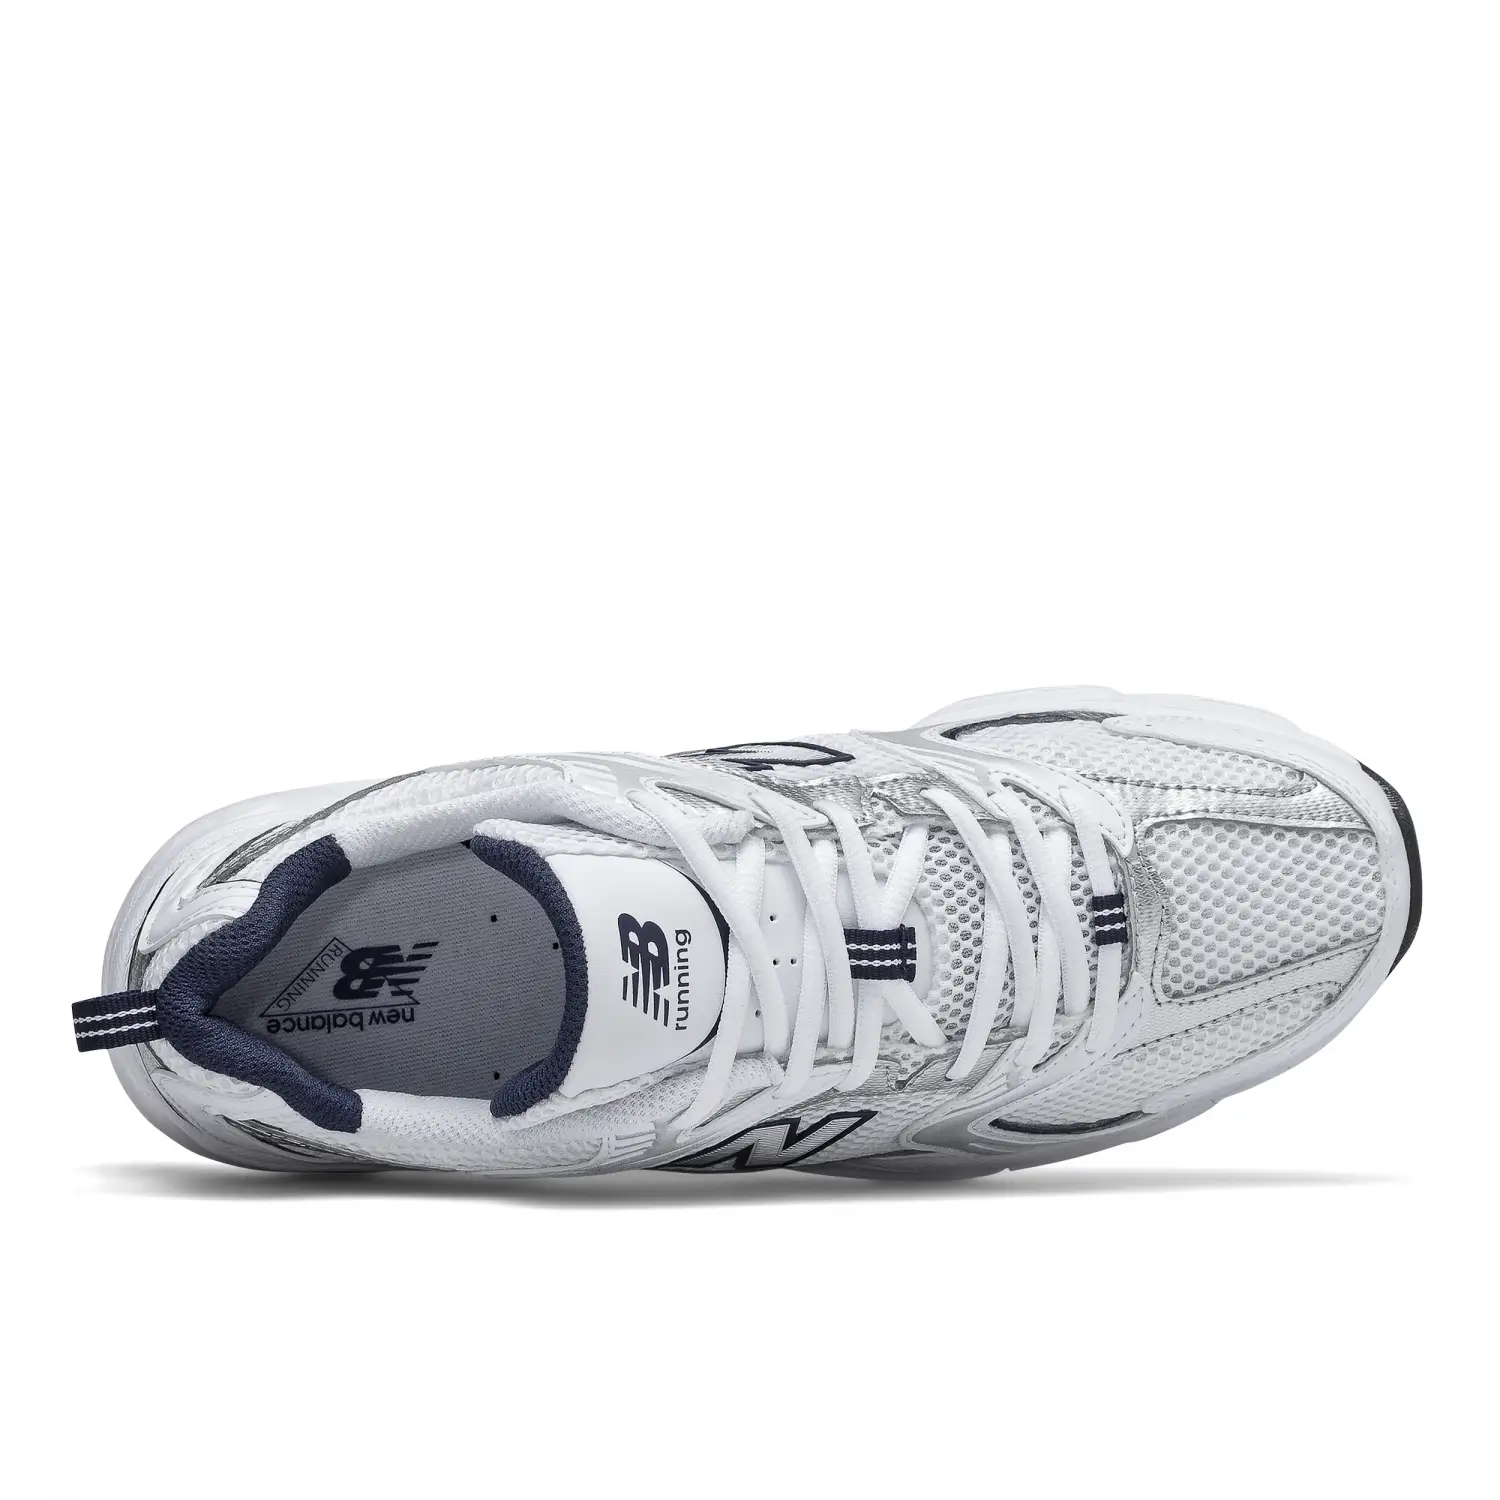 New Balance 530 Beyaz Unisex Günlük Ayakkabı - MR530SG